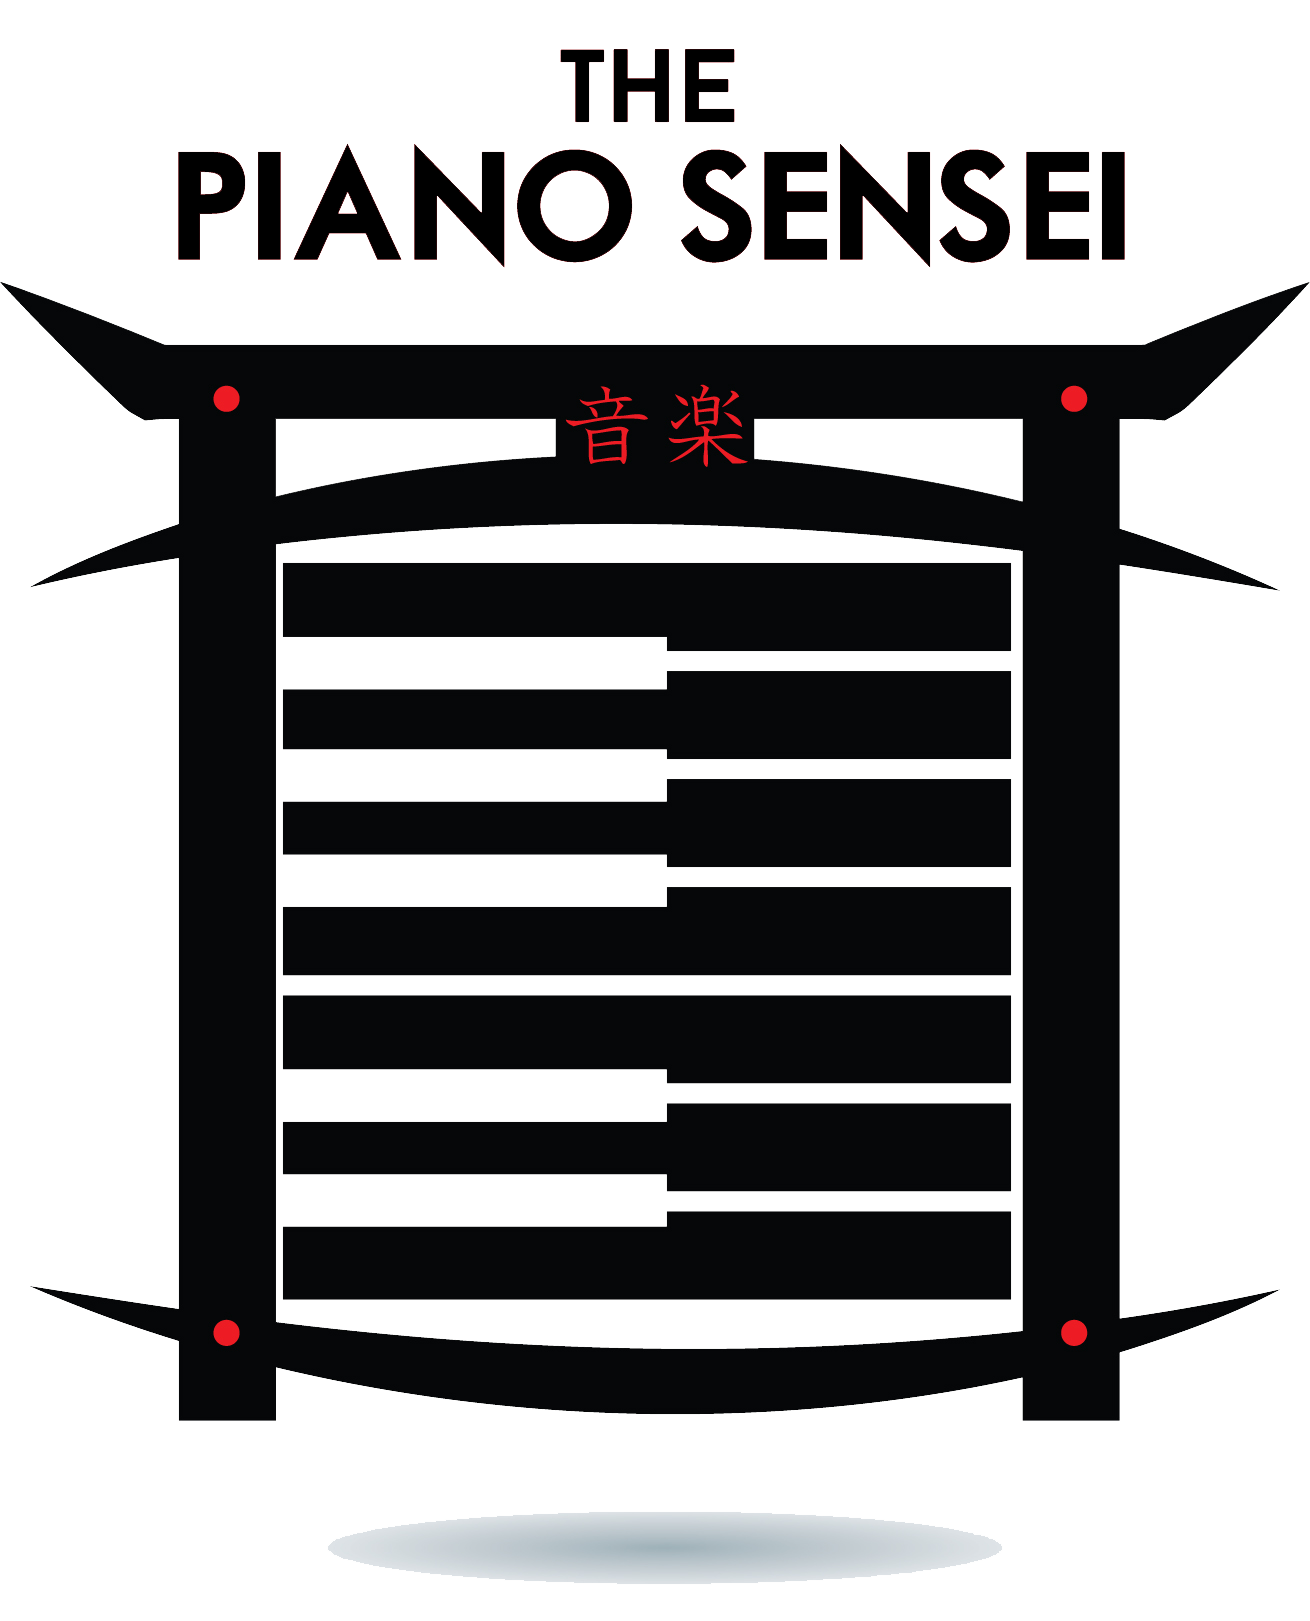 The Piano Sensei